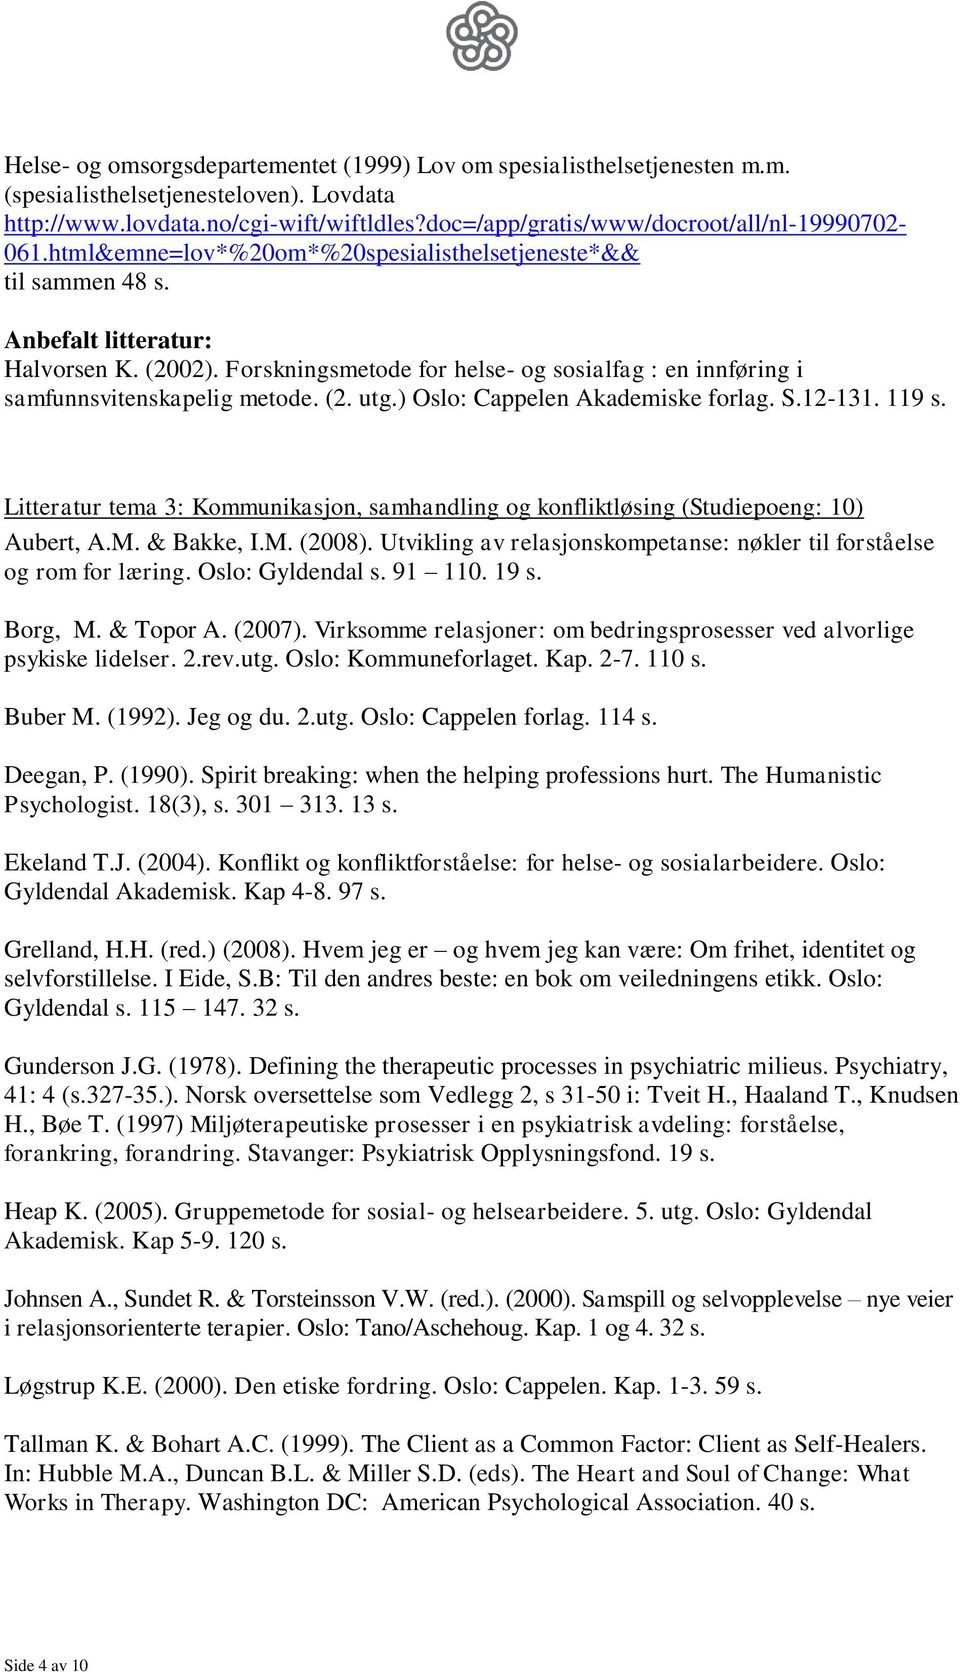 Forskningsmetode for helse- og sosialfag : en innføring i samfunnsvitenskapelig metode. (2. utg.) Oslo: Cappelen Akademiske forlag. S.12-131. 119 s.